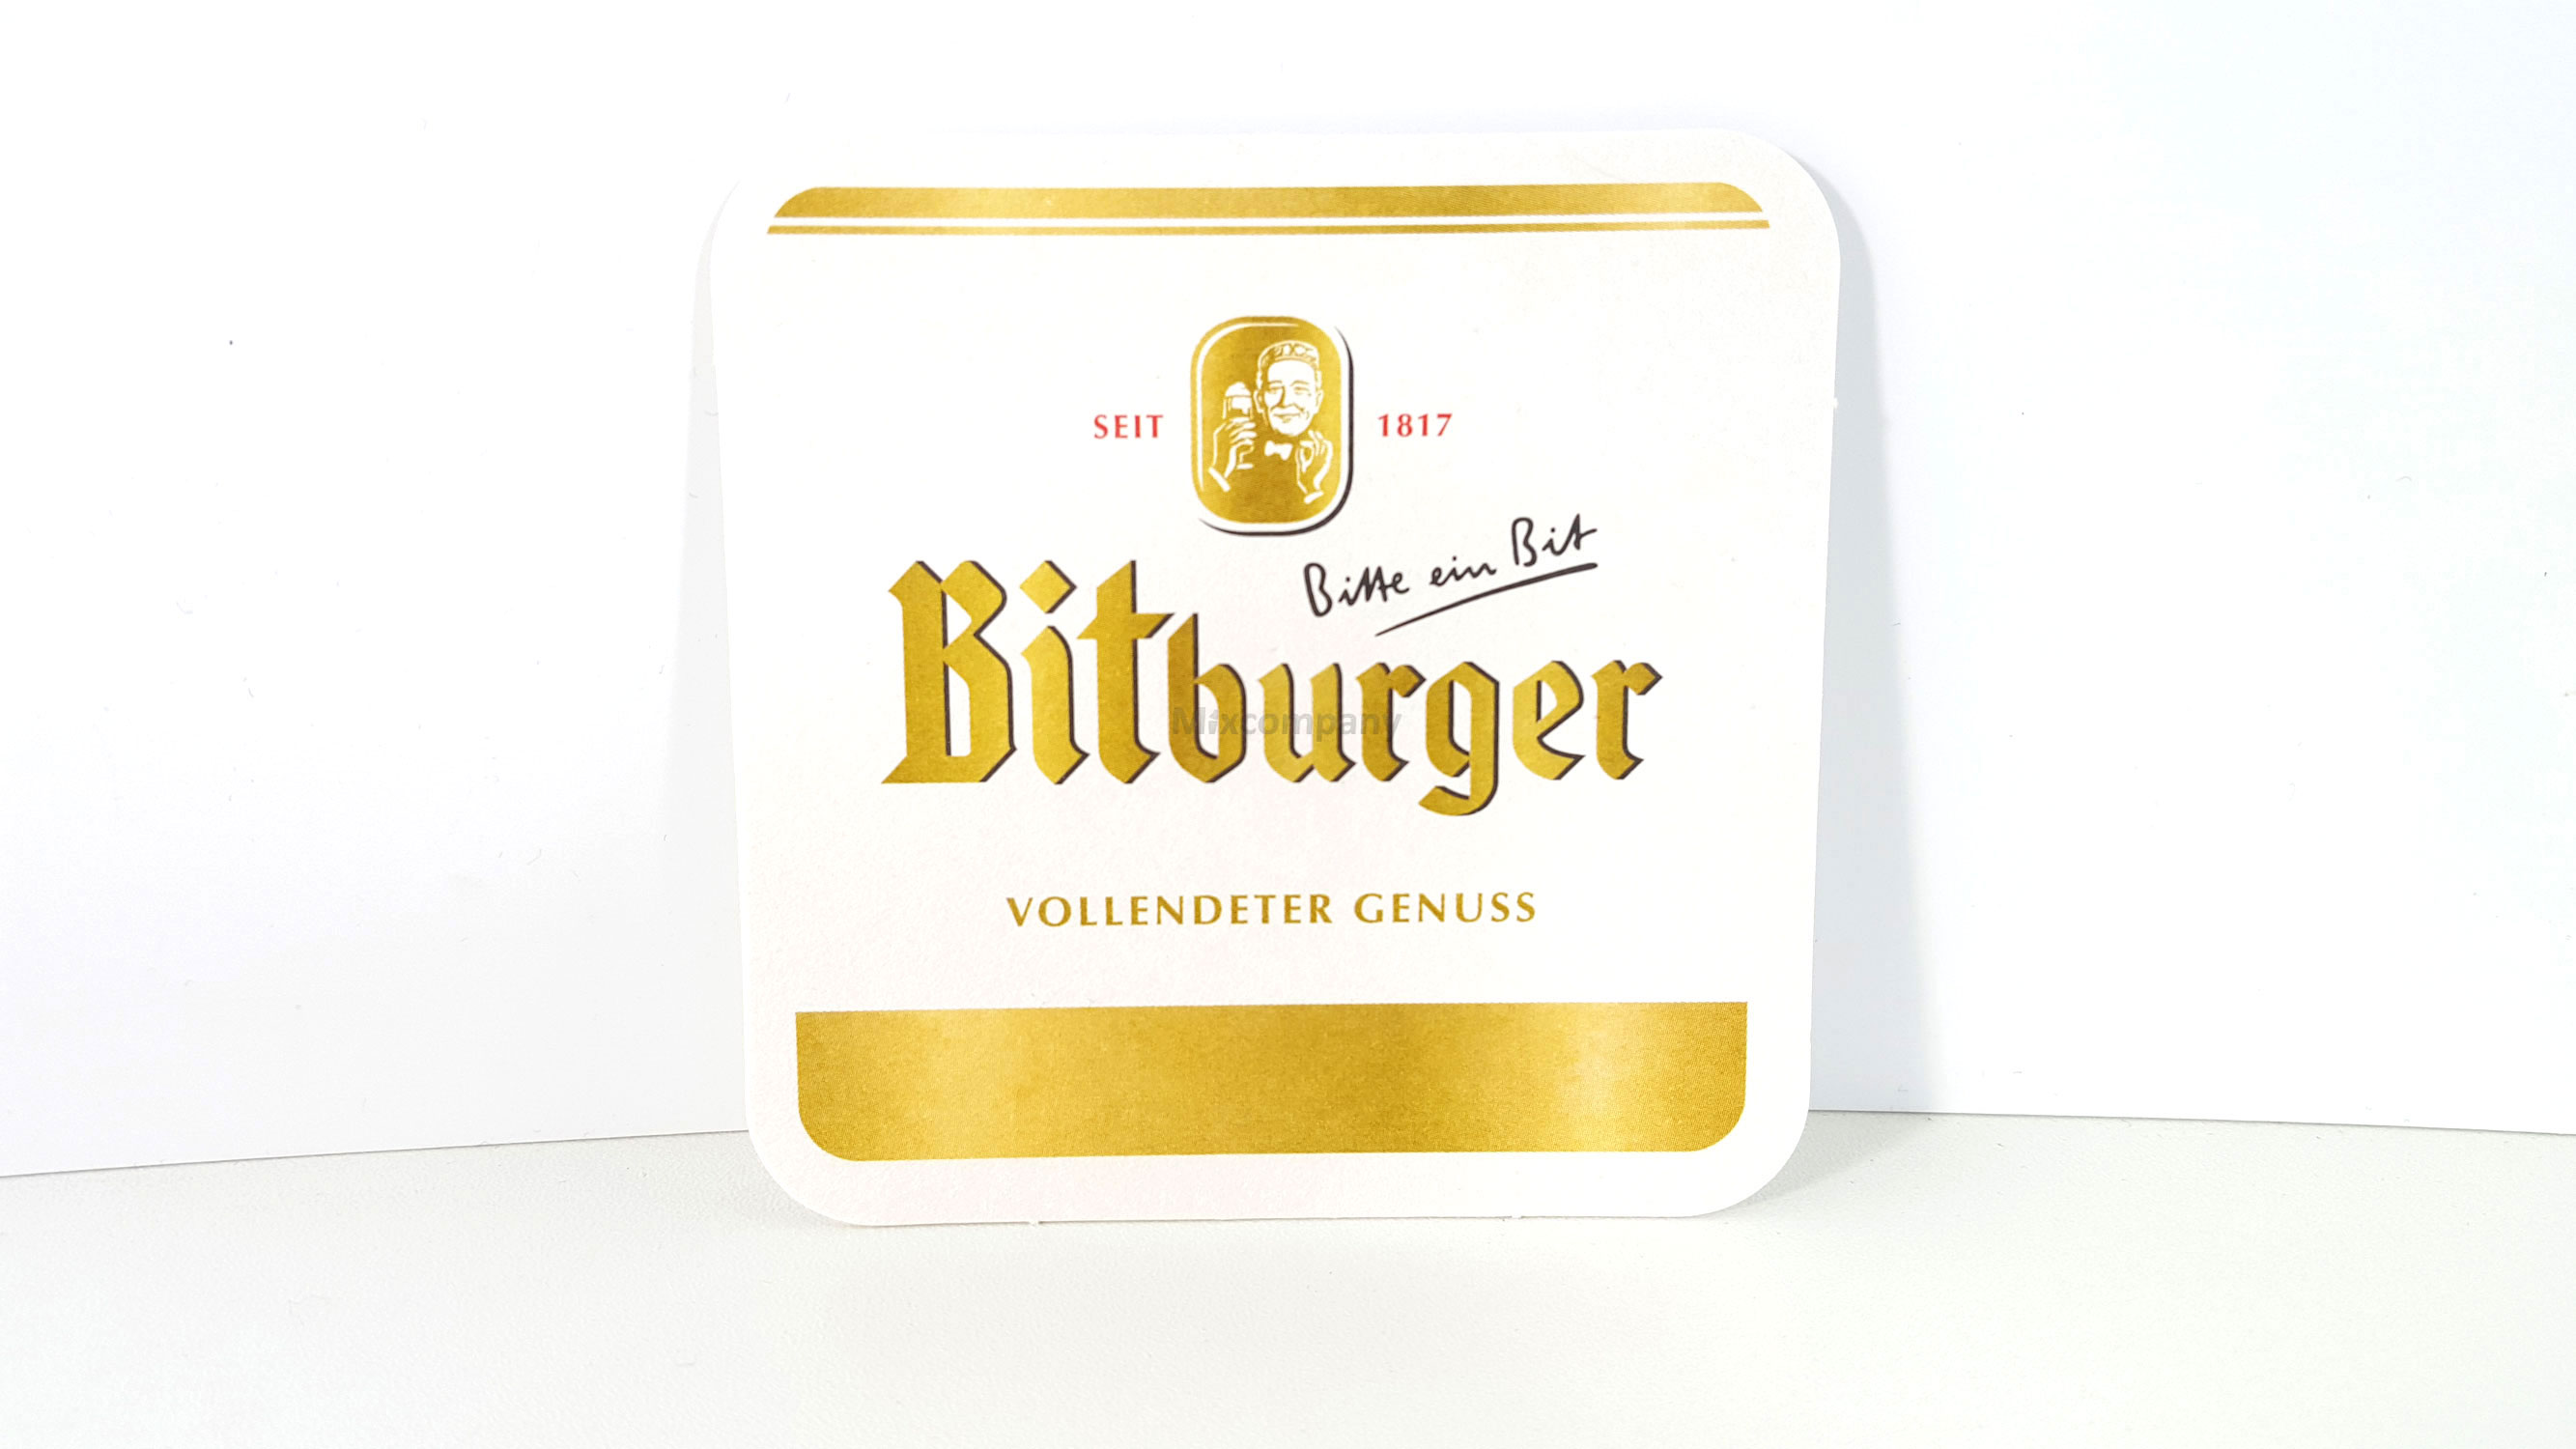 Bitburger Bierdeckel - 375 Stück